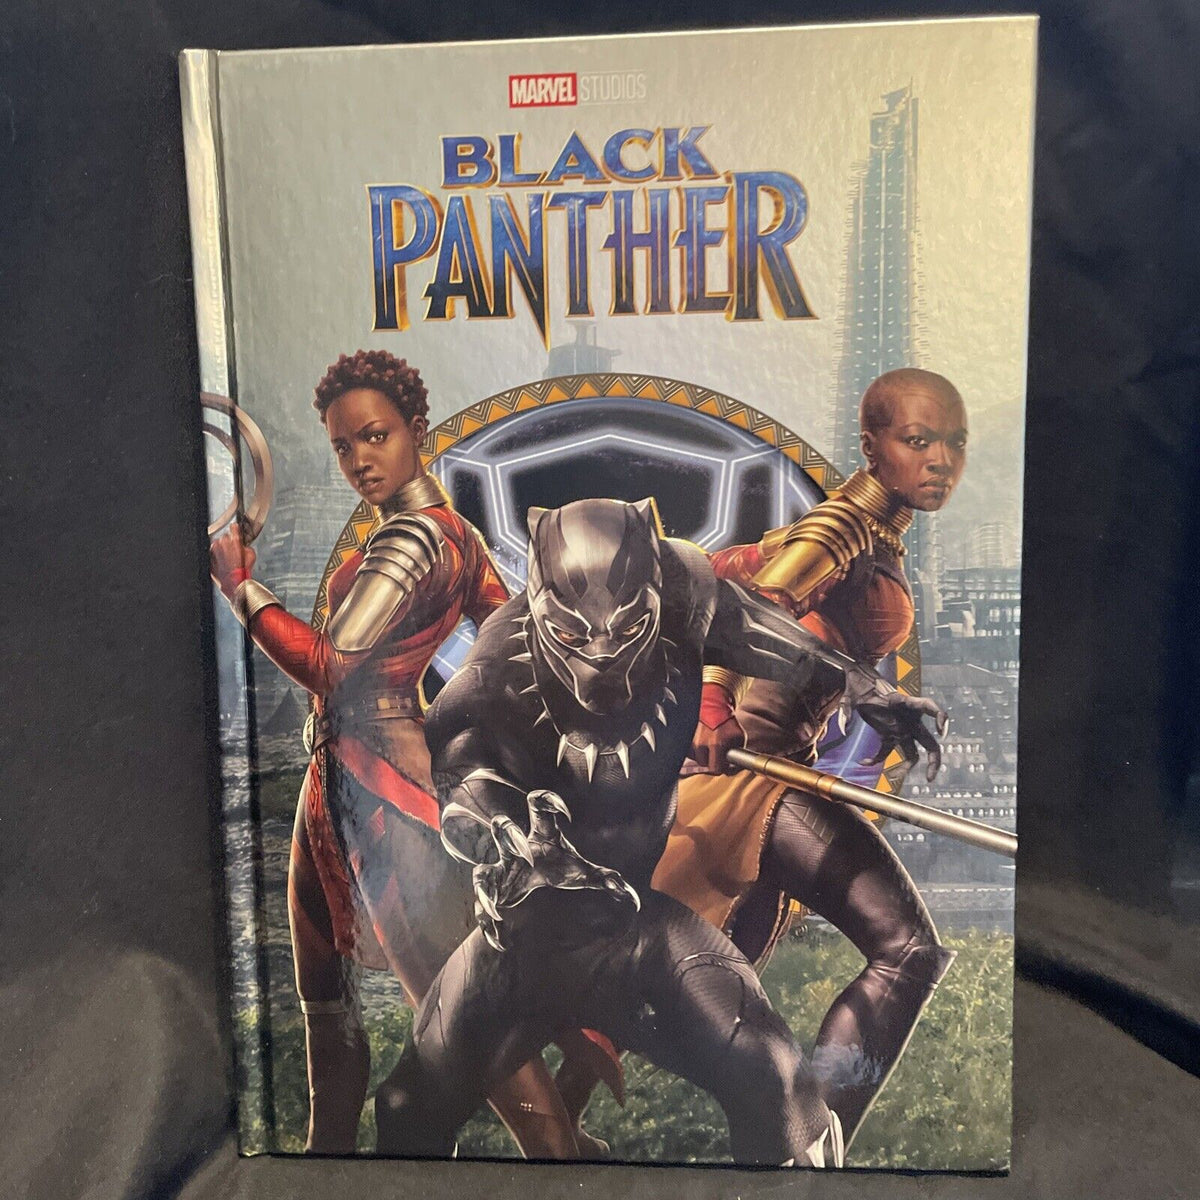 Marvel: Black Panther, Book by Steve Behling